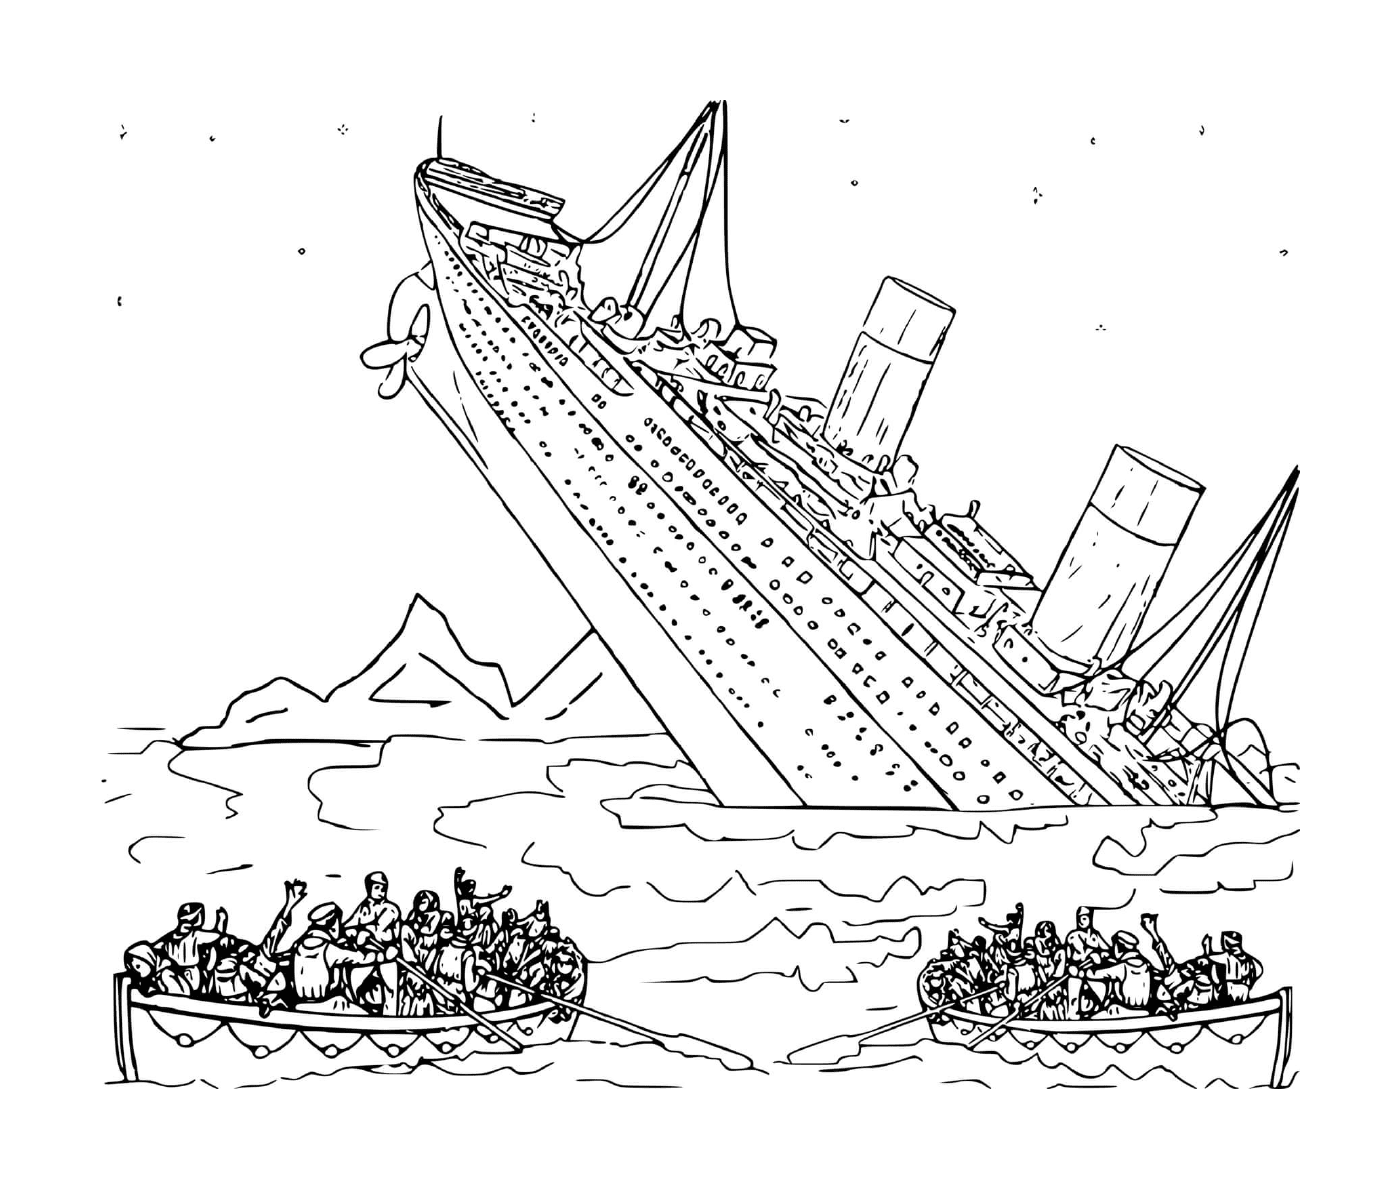  Una barca in acqua con persone a bordo 